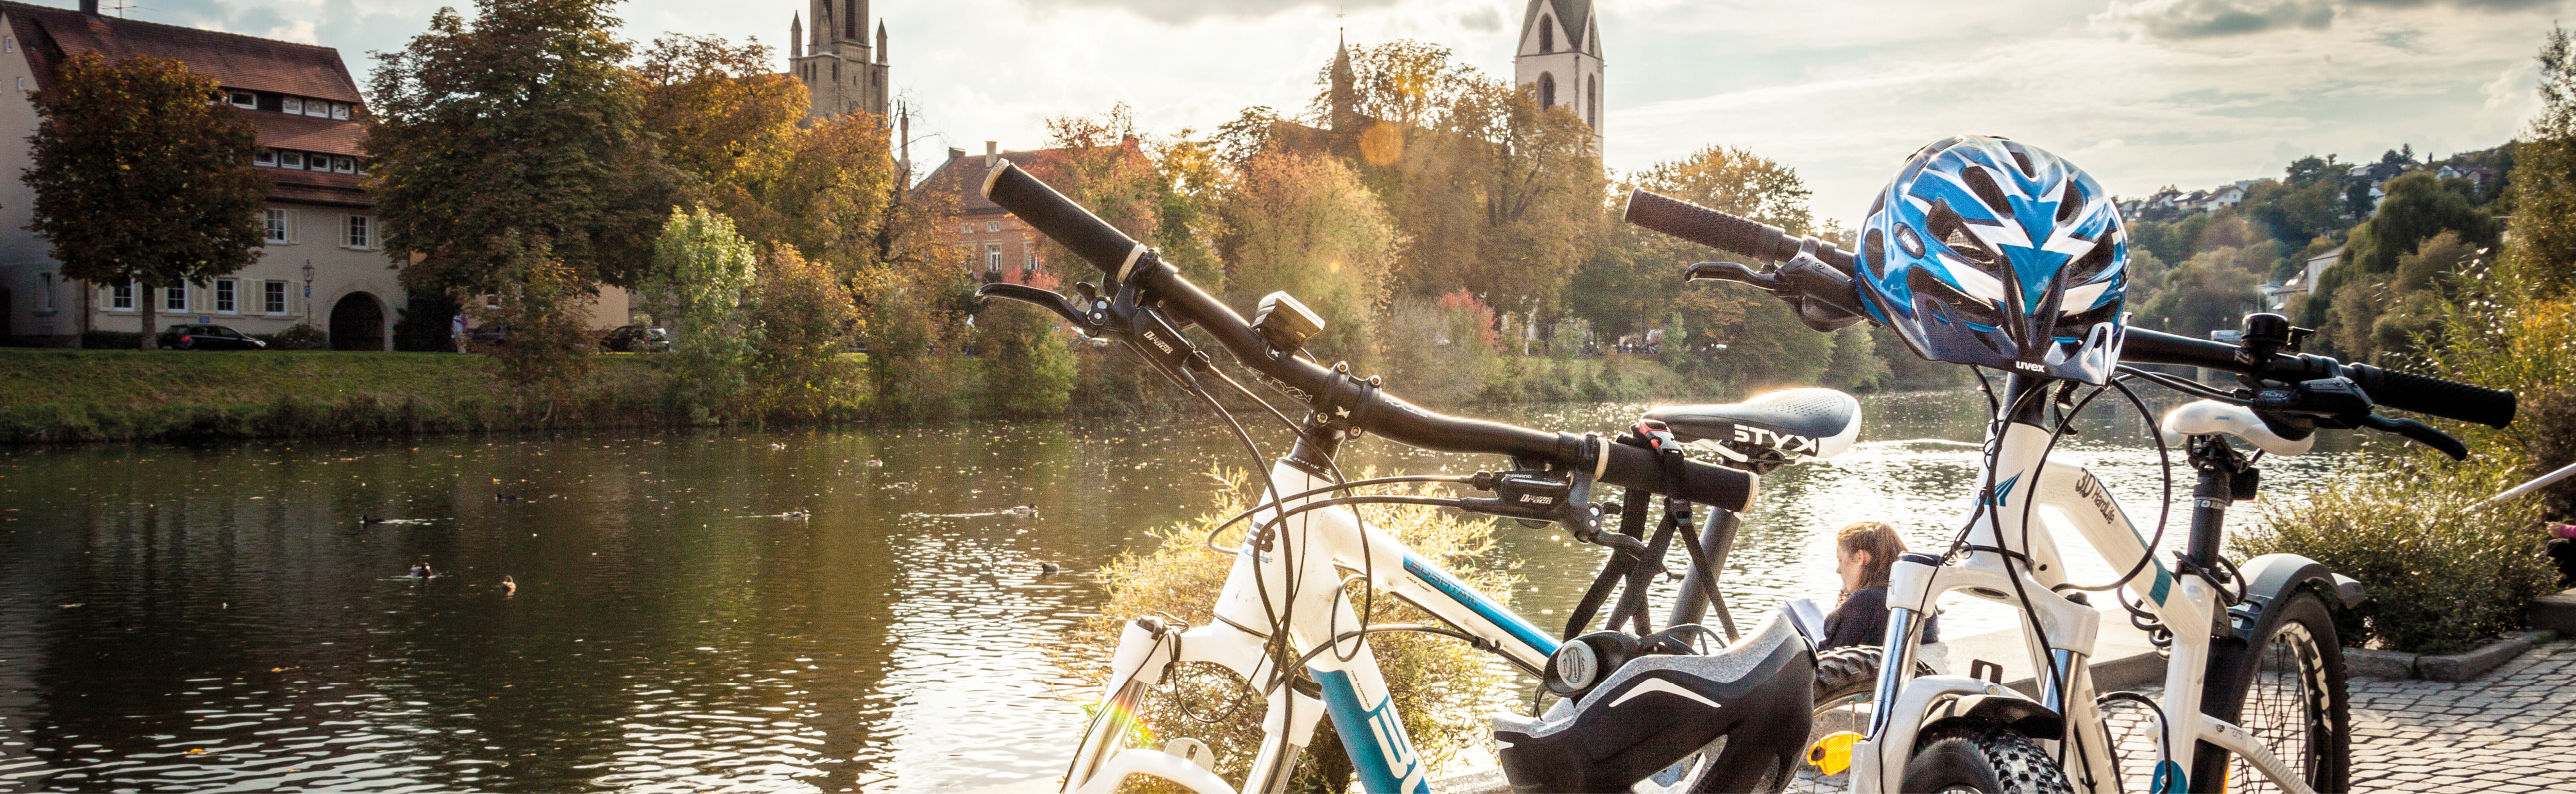 Fahrräder am Neckarufer